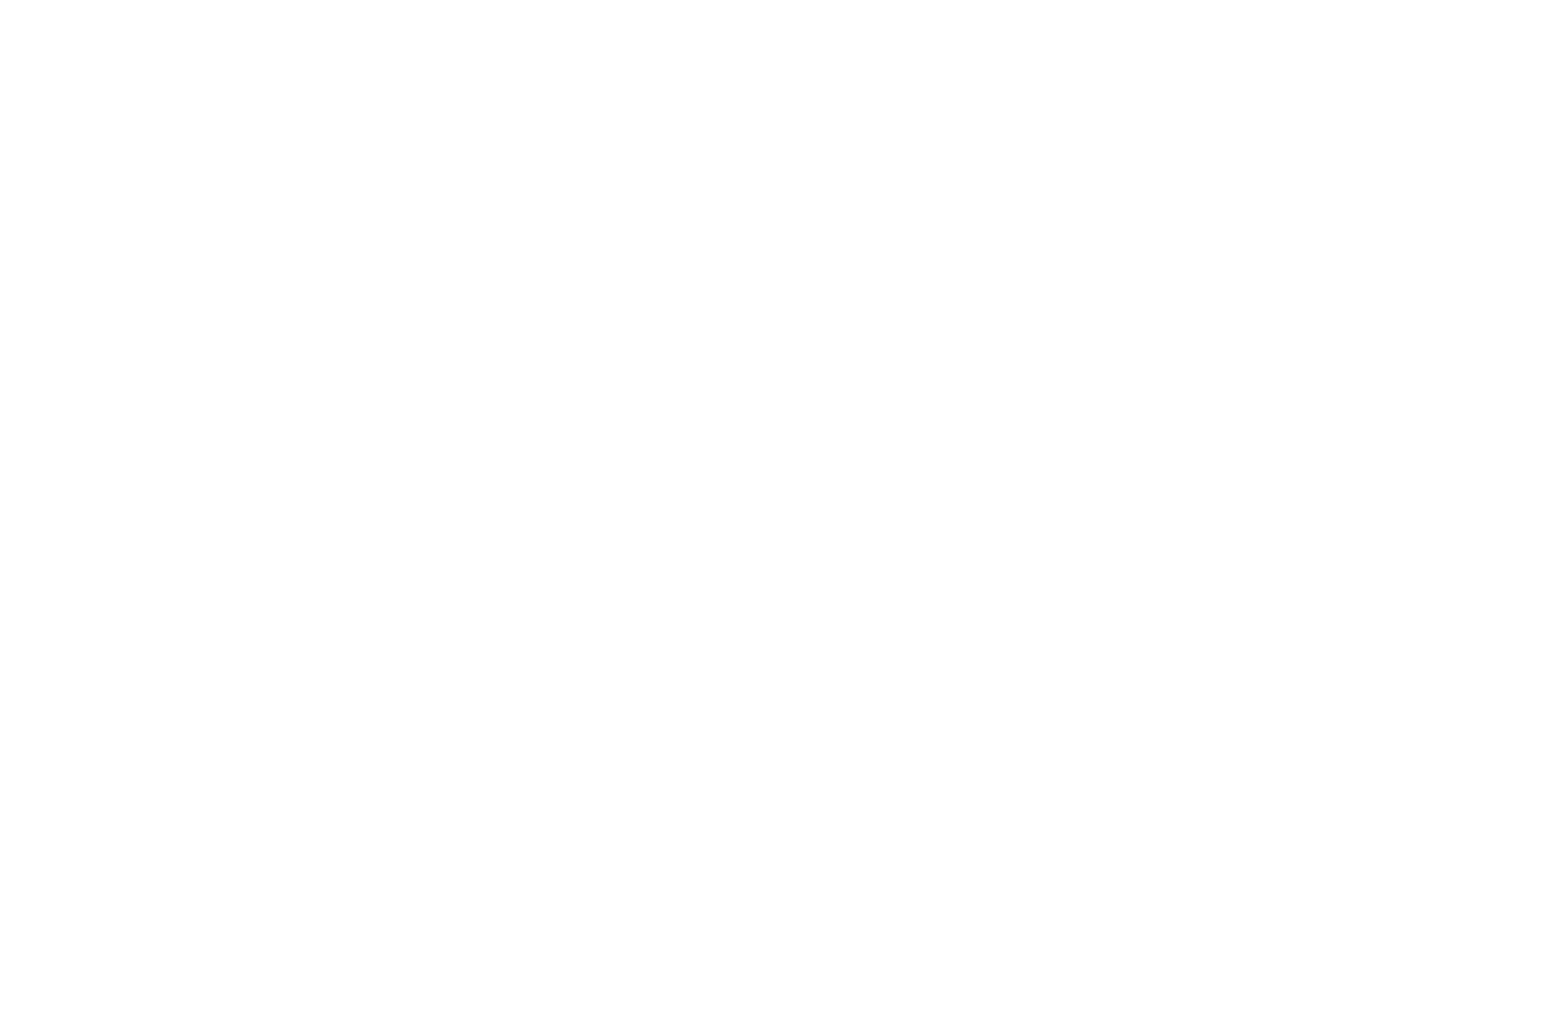 Seres Group  logo pour fonds sombres (PNG transparent)